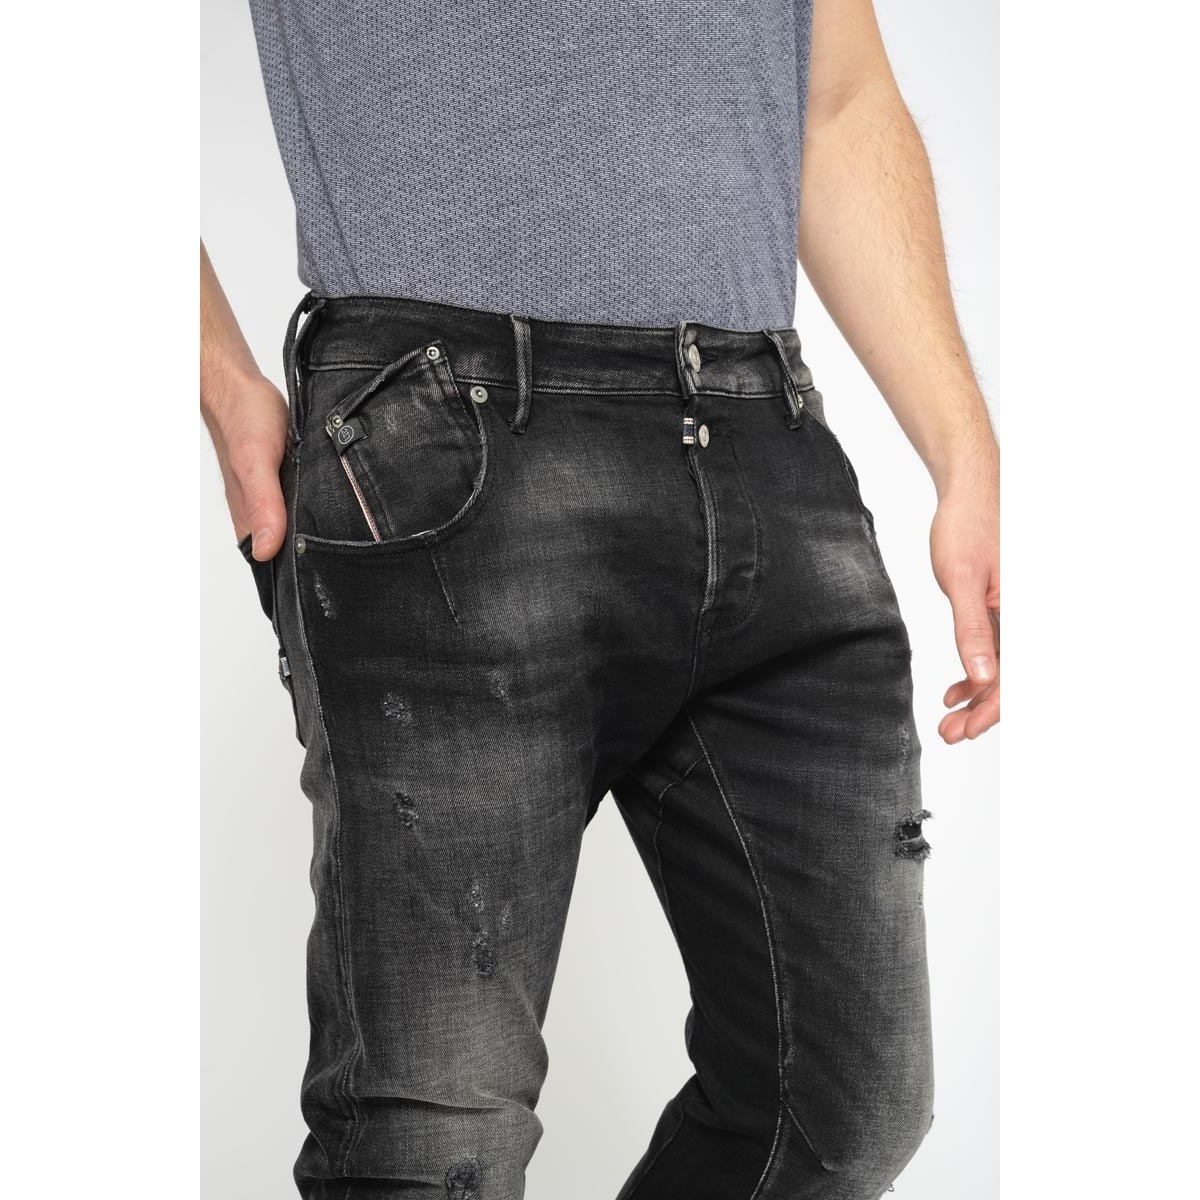 Le Temps des Cerises Noir Alost 900/3 tapered arqué destroy jeans noir 6SPBUkSC